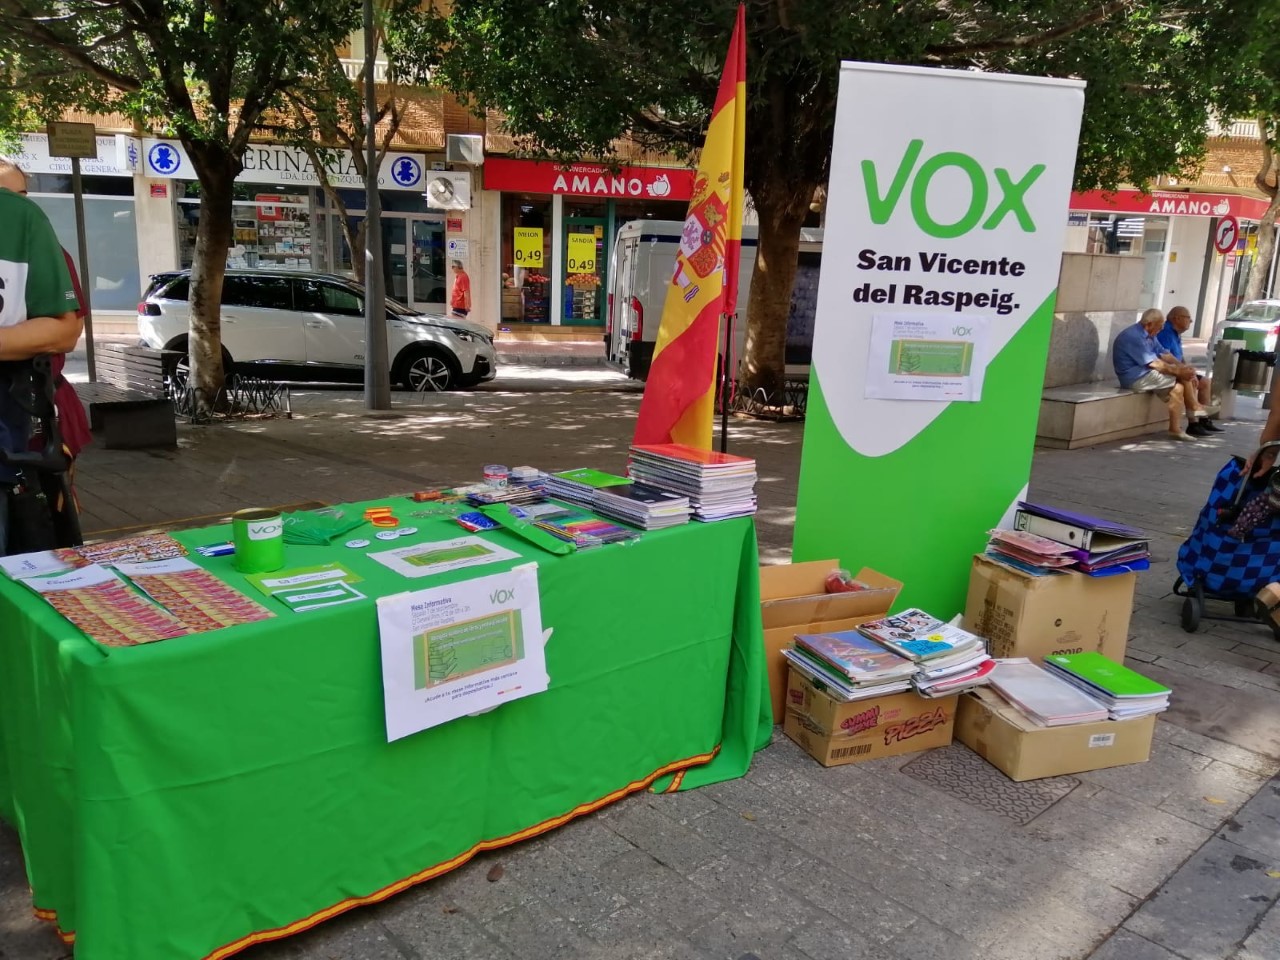 La "generosidad" de sanvicenteros en Mesa de VOX refleja la "grandesa de España" | Lasvocesdelpueblo